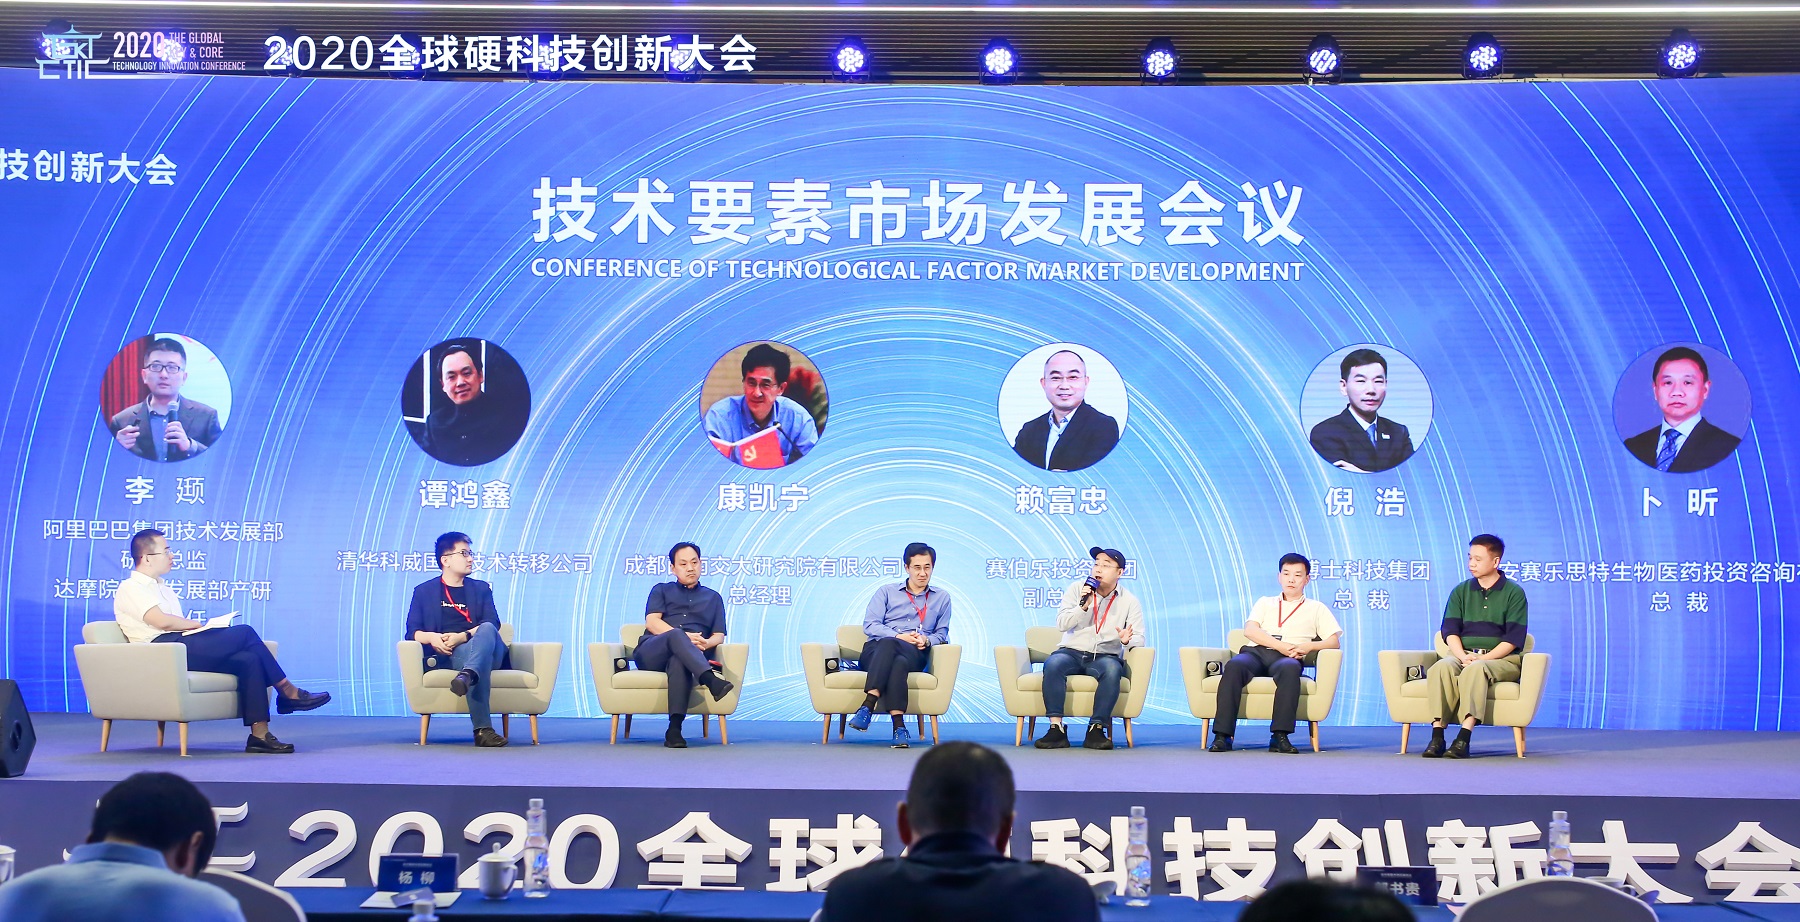 赛伯乐副总裁赖富忠应邀出席《2020全球硬科技创新大会》